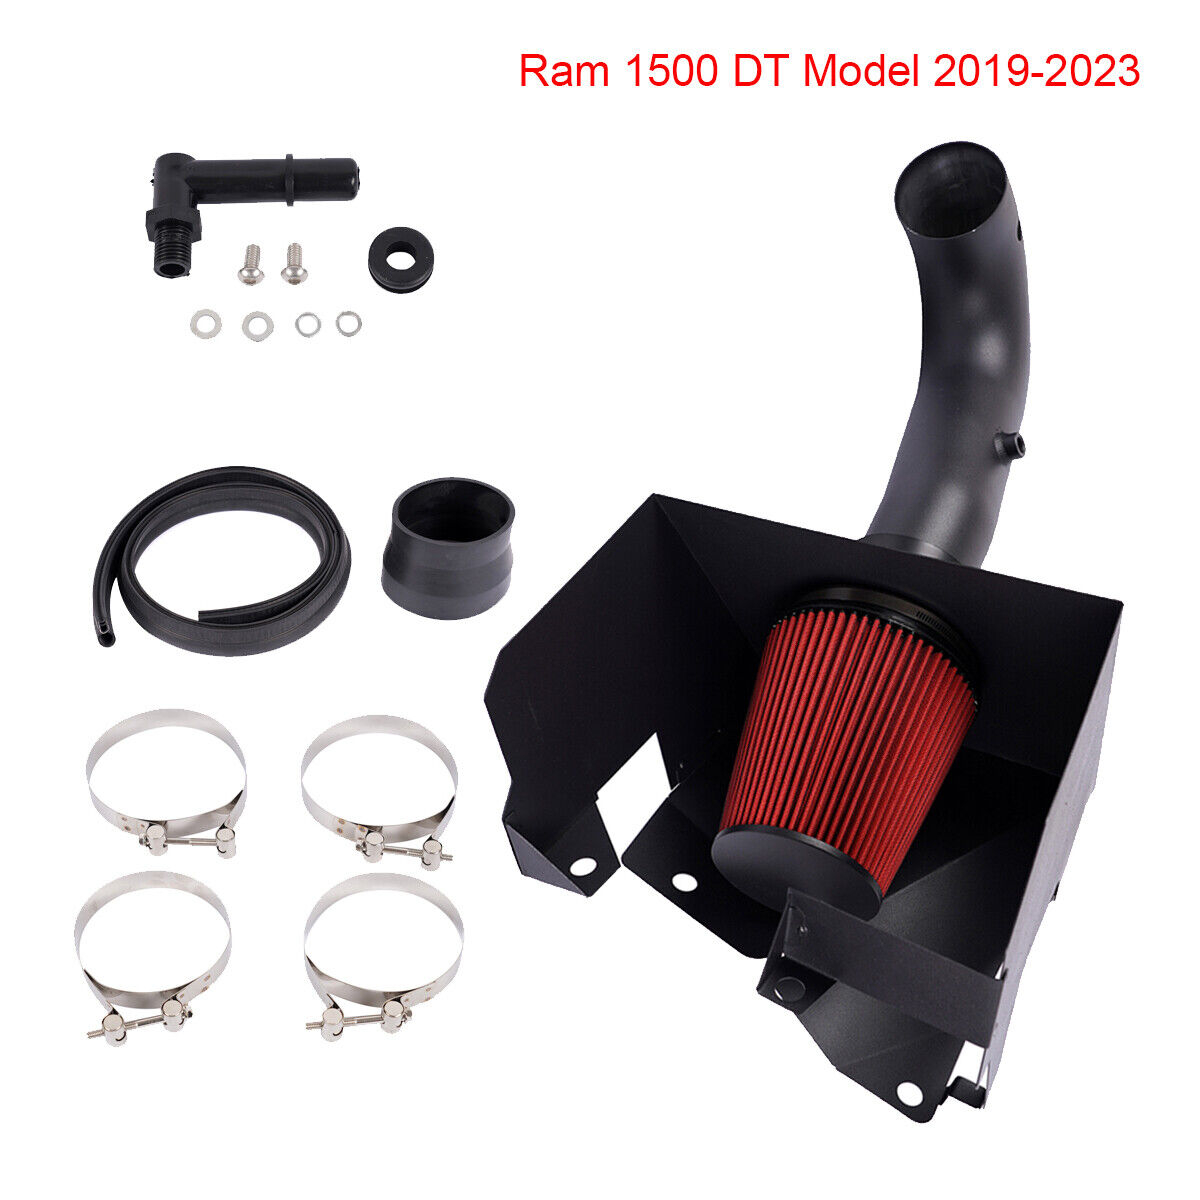 Red Cold Air Intake Kit Fits 2019-2022 Ram 1500 5.7L - 10477 Ram Pickup